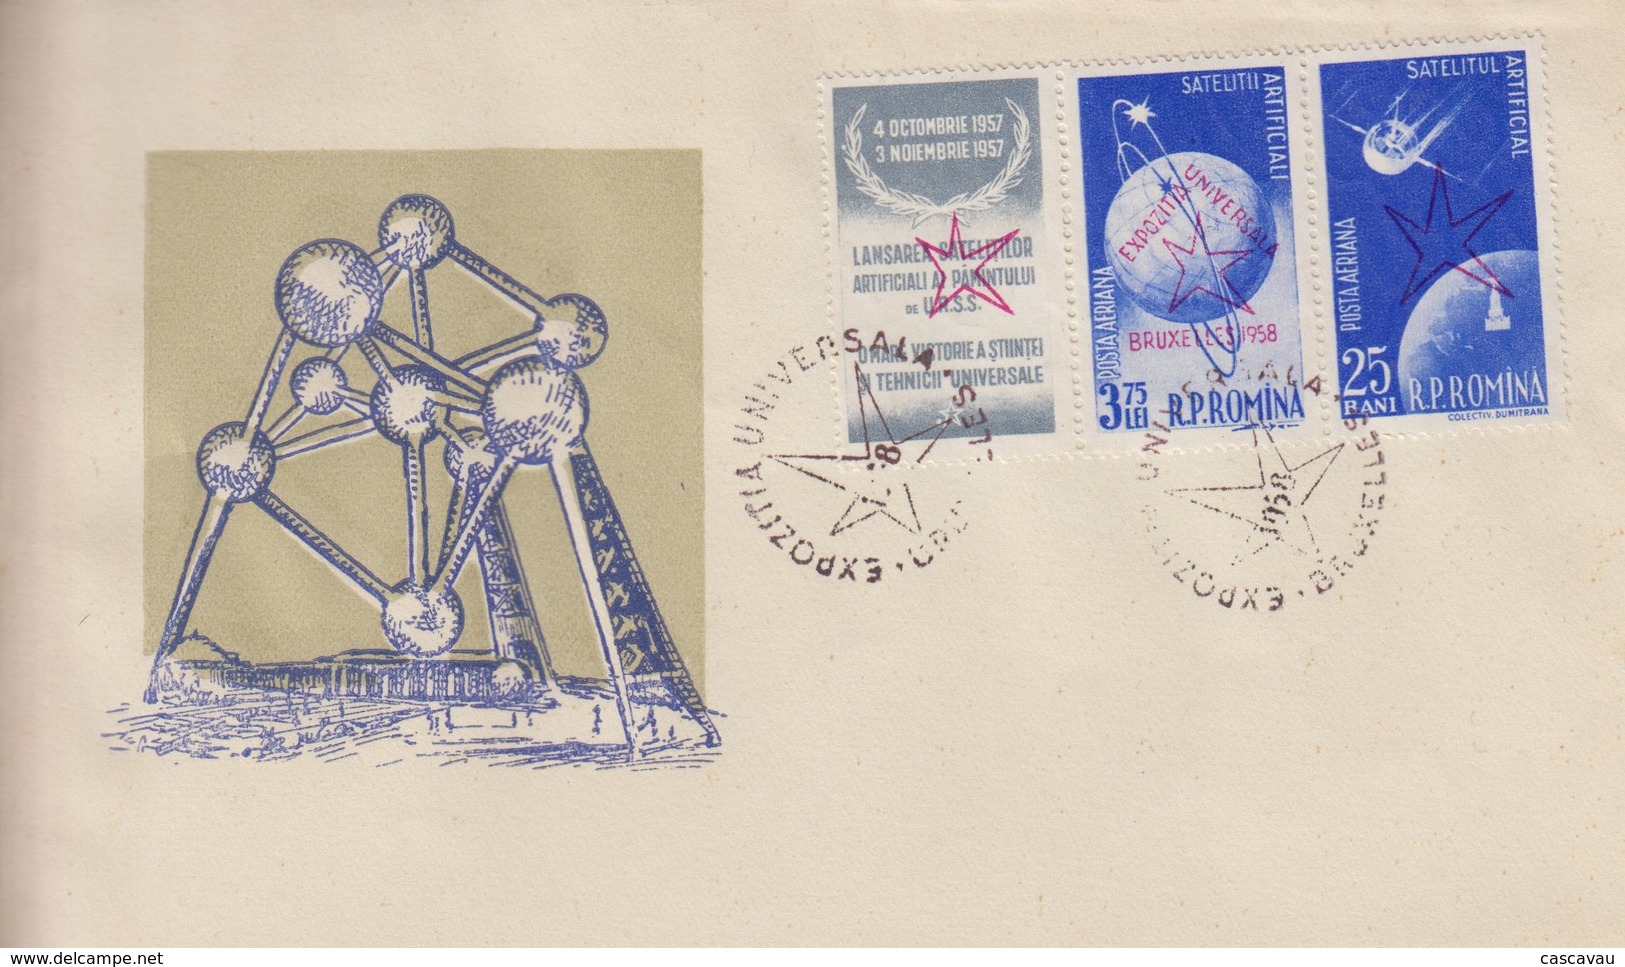 Enveloppe  FDC  1er Jour   ROUMANIE     Exposition  Universelle  BRUXELLES   1958 - 1958 – Bruselas (Bélgica)